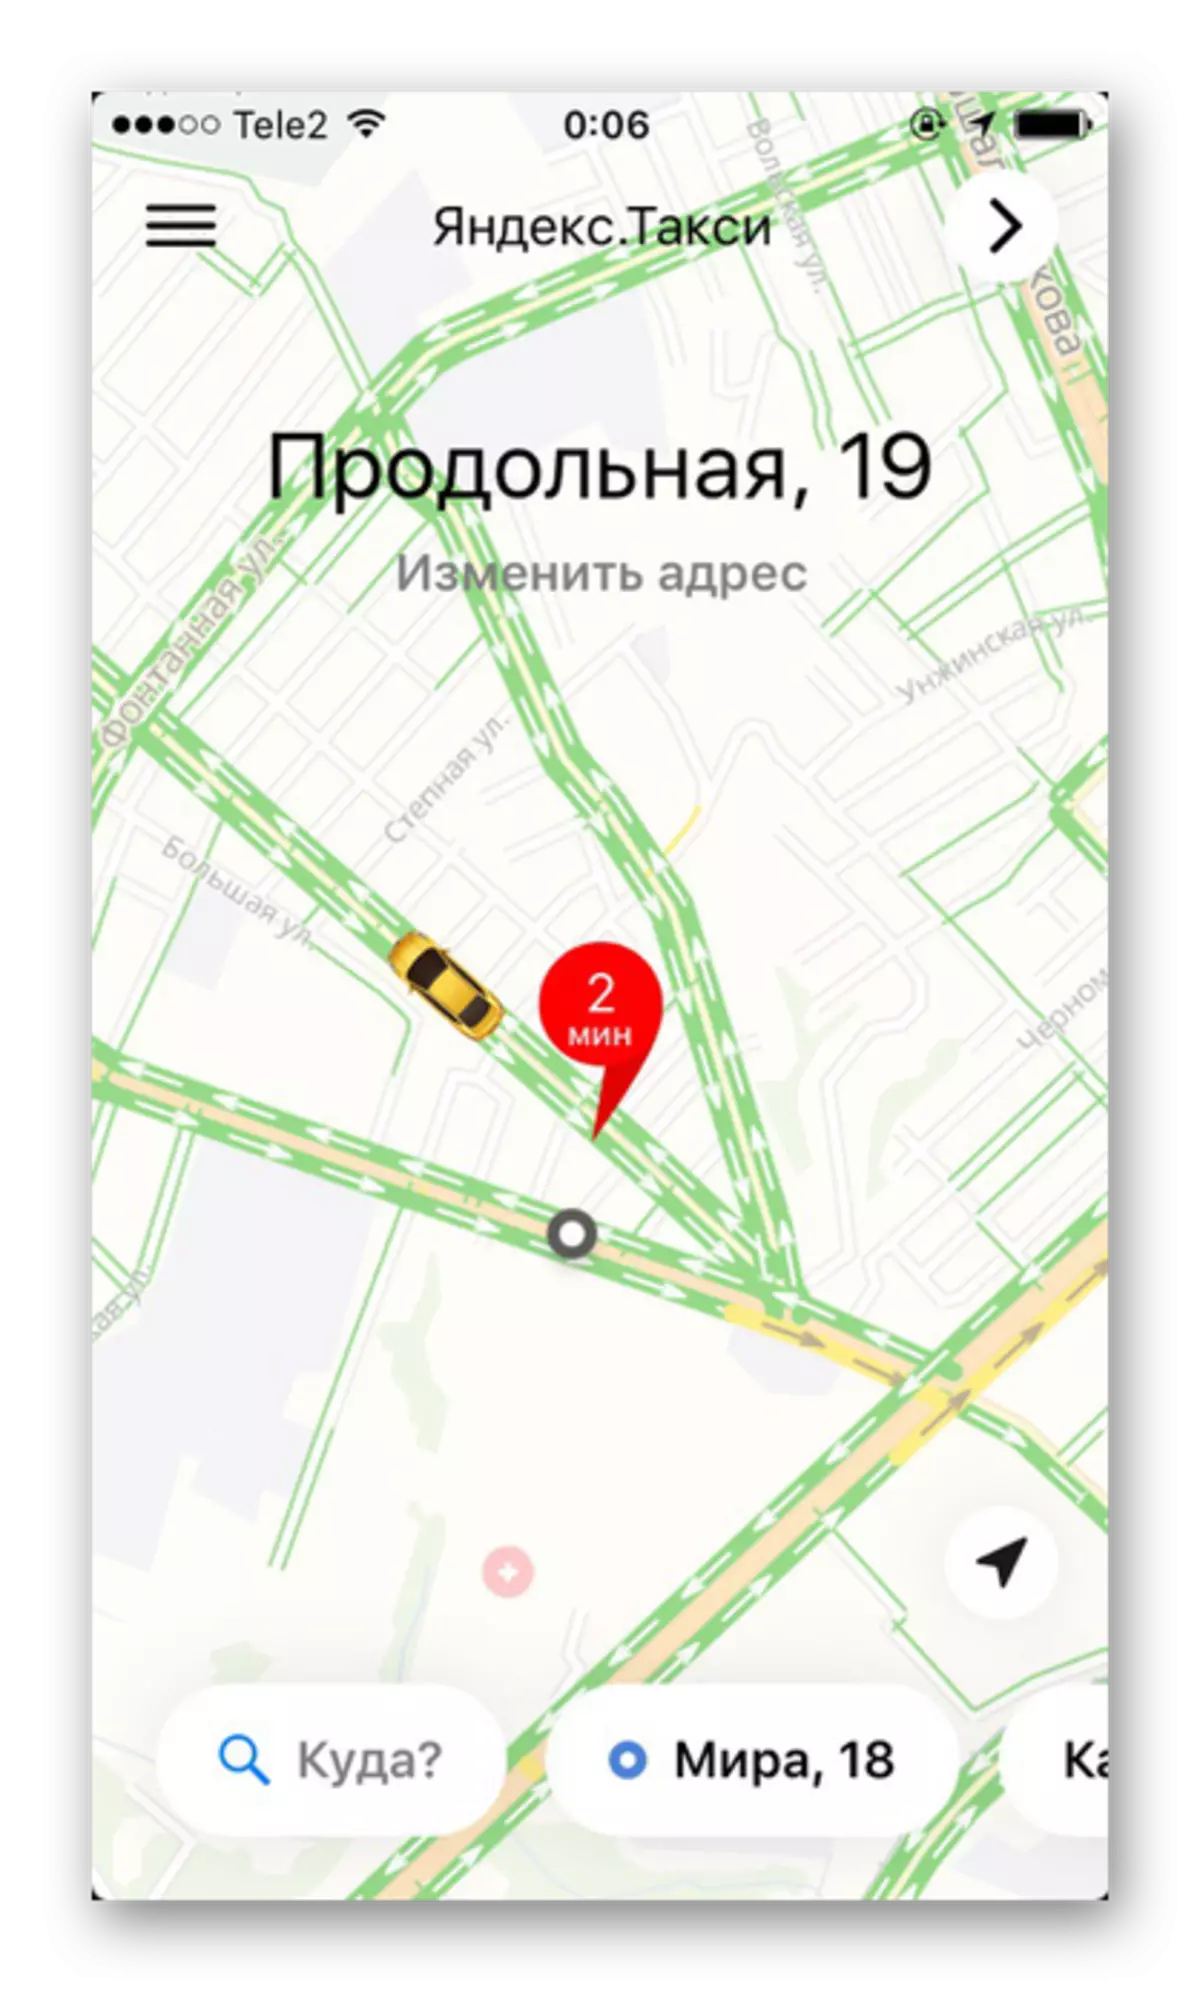 فعال کردن ترافیک و حجم کار جاده ای در برنامه Yandex.Taxi در iPhone